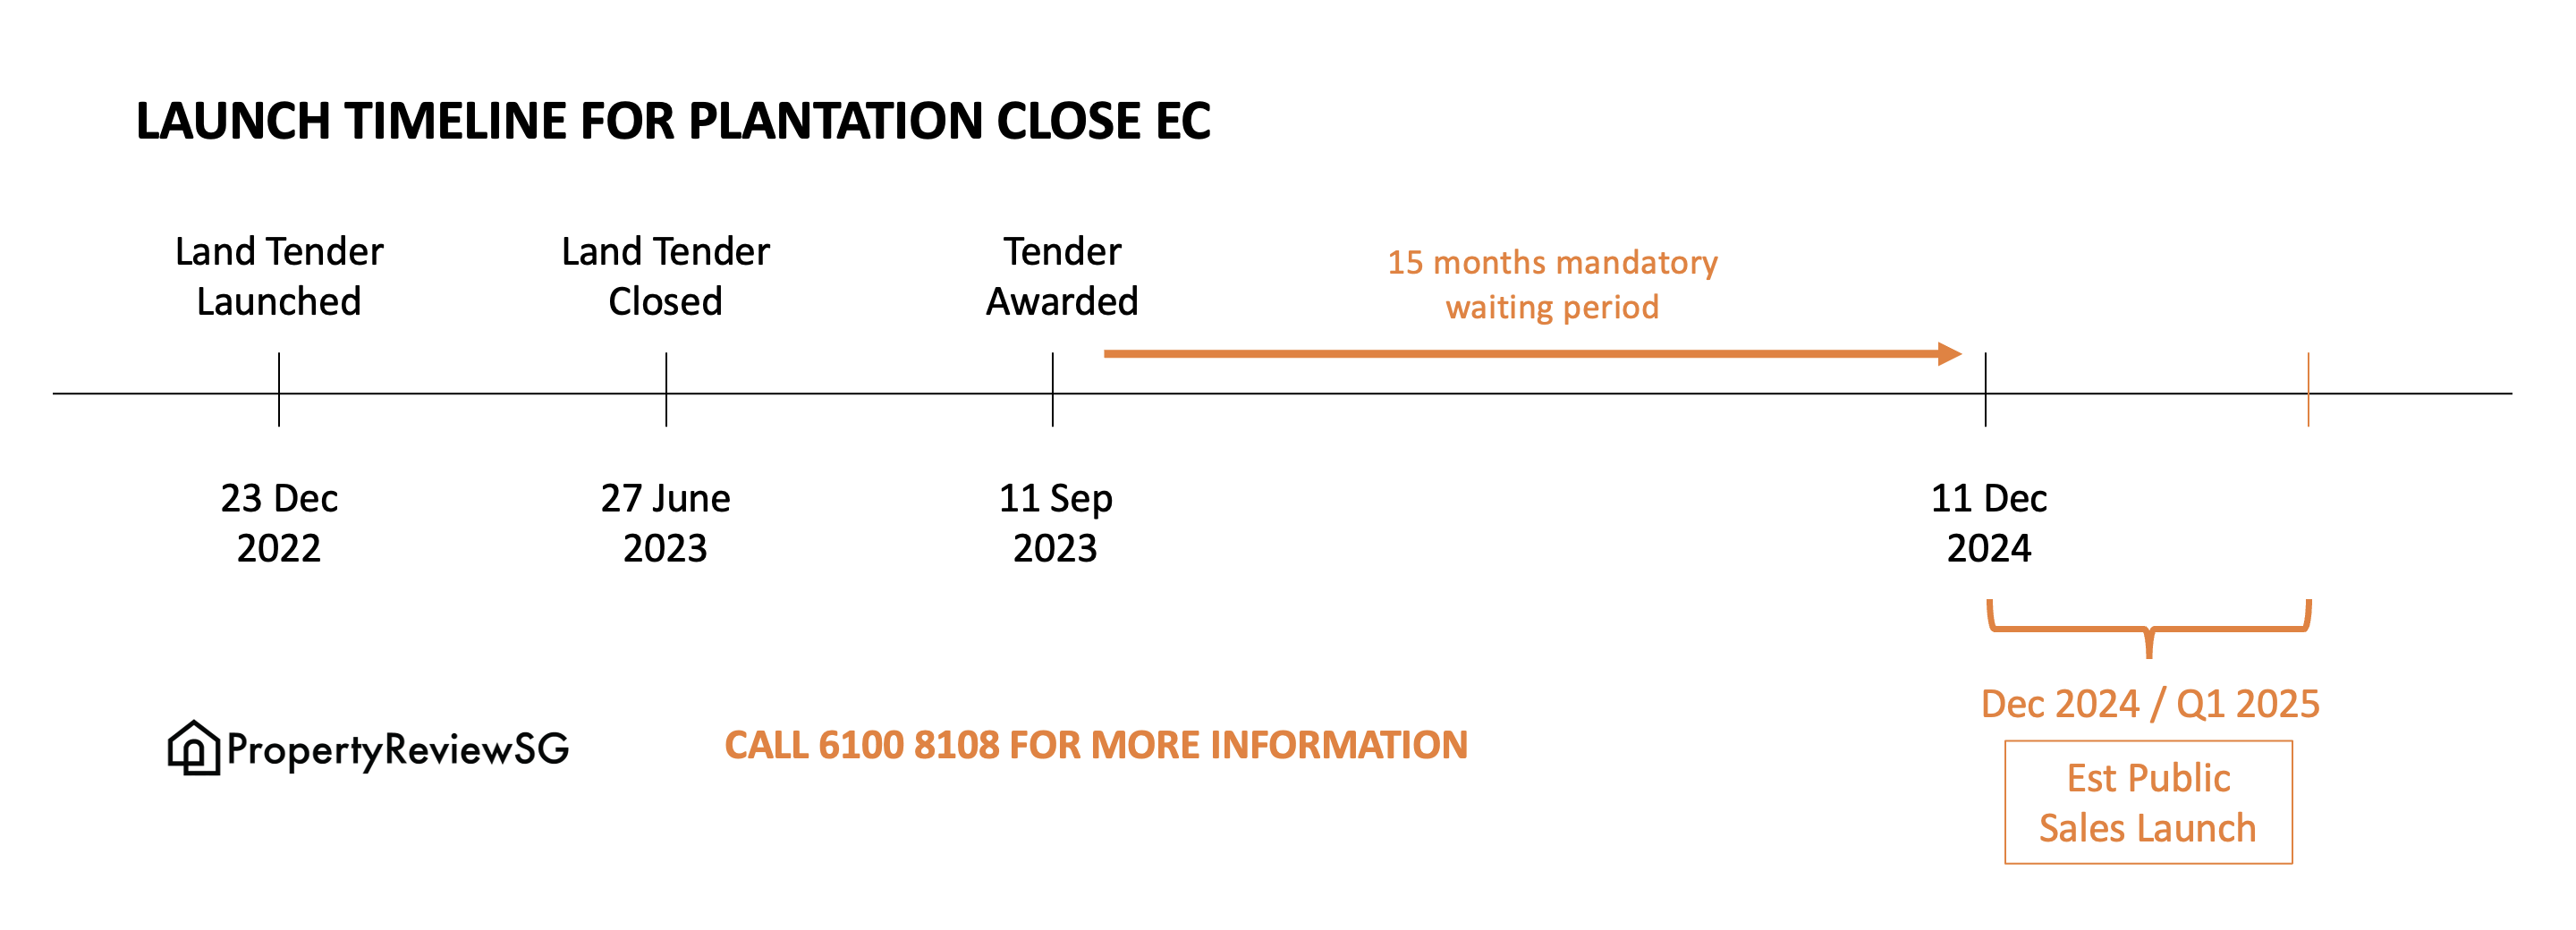 Plantation Close EC Launch Timeline